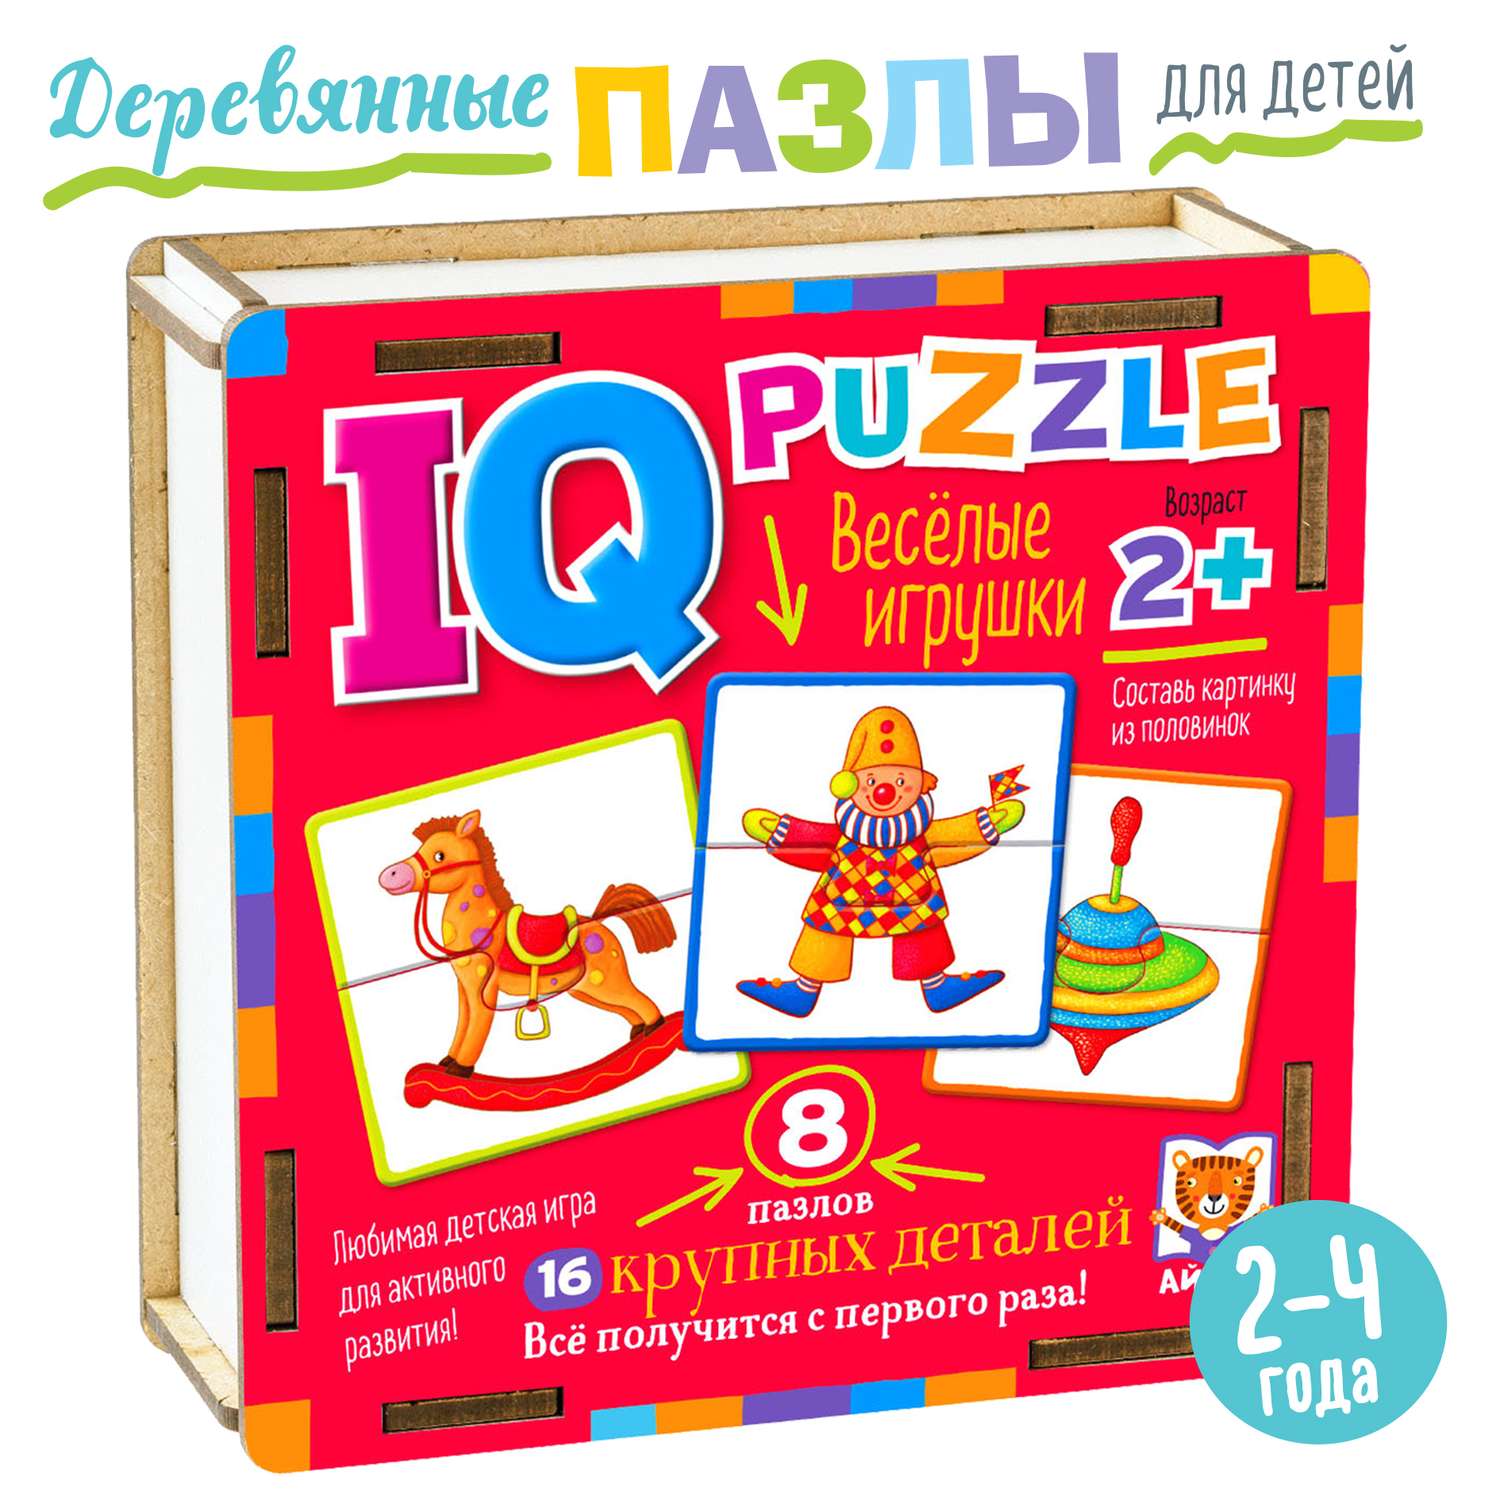 IQ Пазл Деревянный АЙРИС ПРЕСС Весёлые игрушки 16 элементов 2+ - фото 1